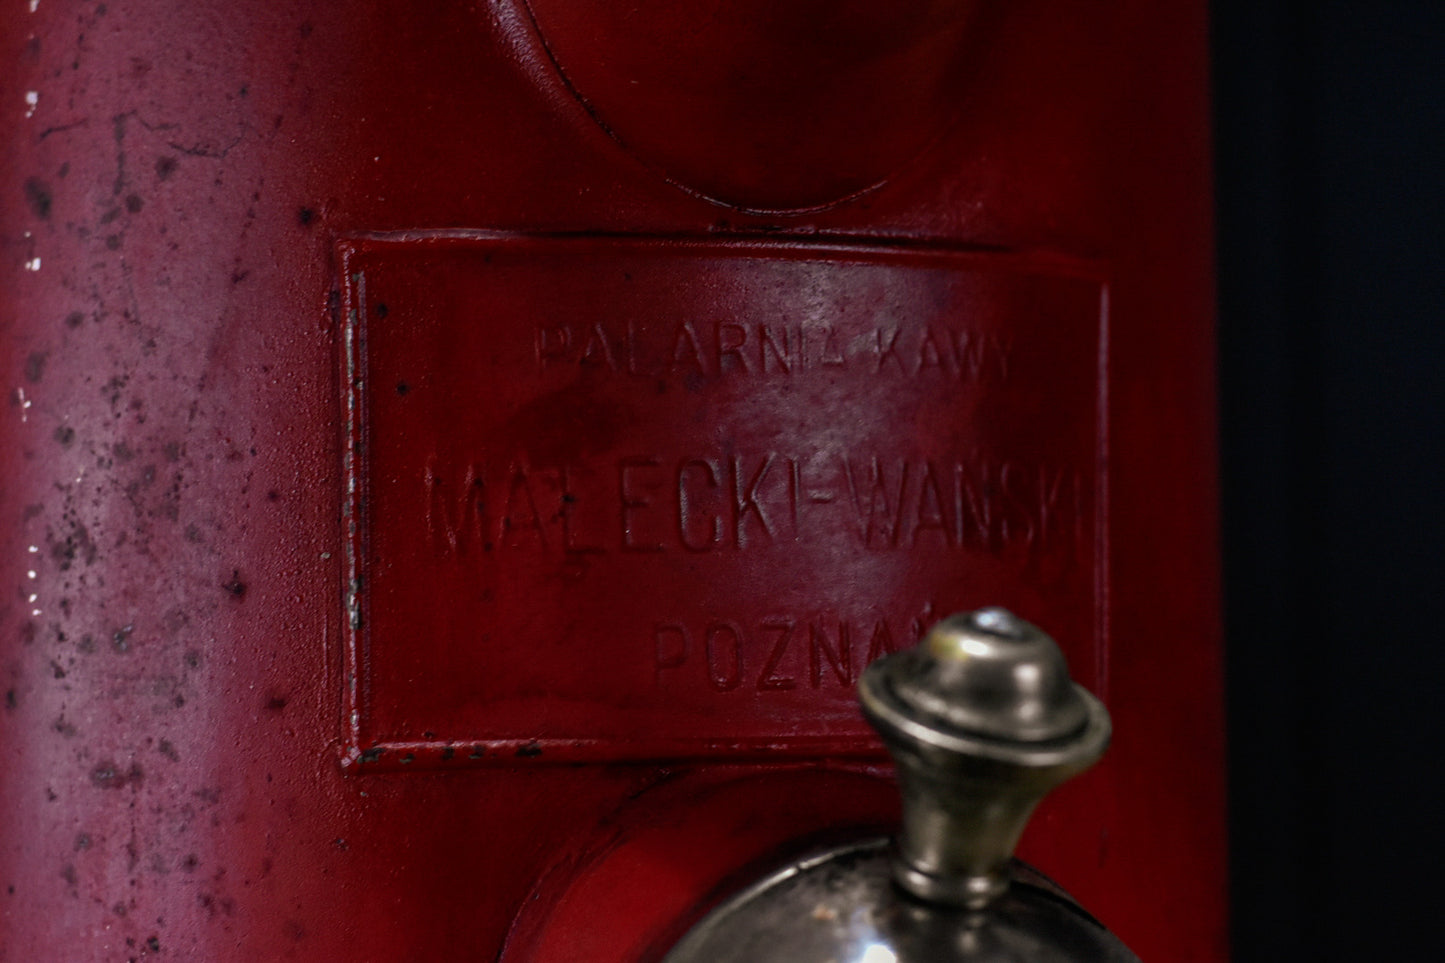 Coffe bean dispenser / box Pre-War